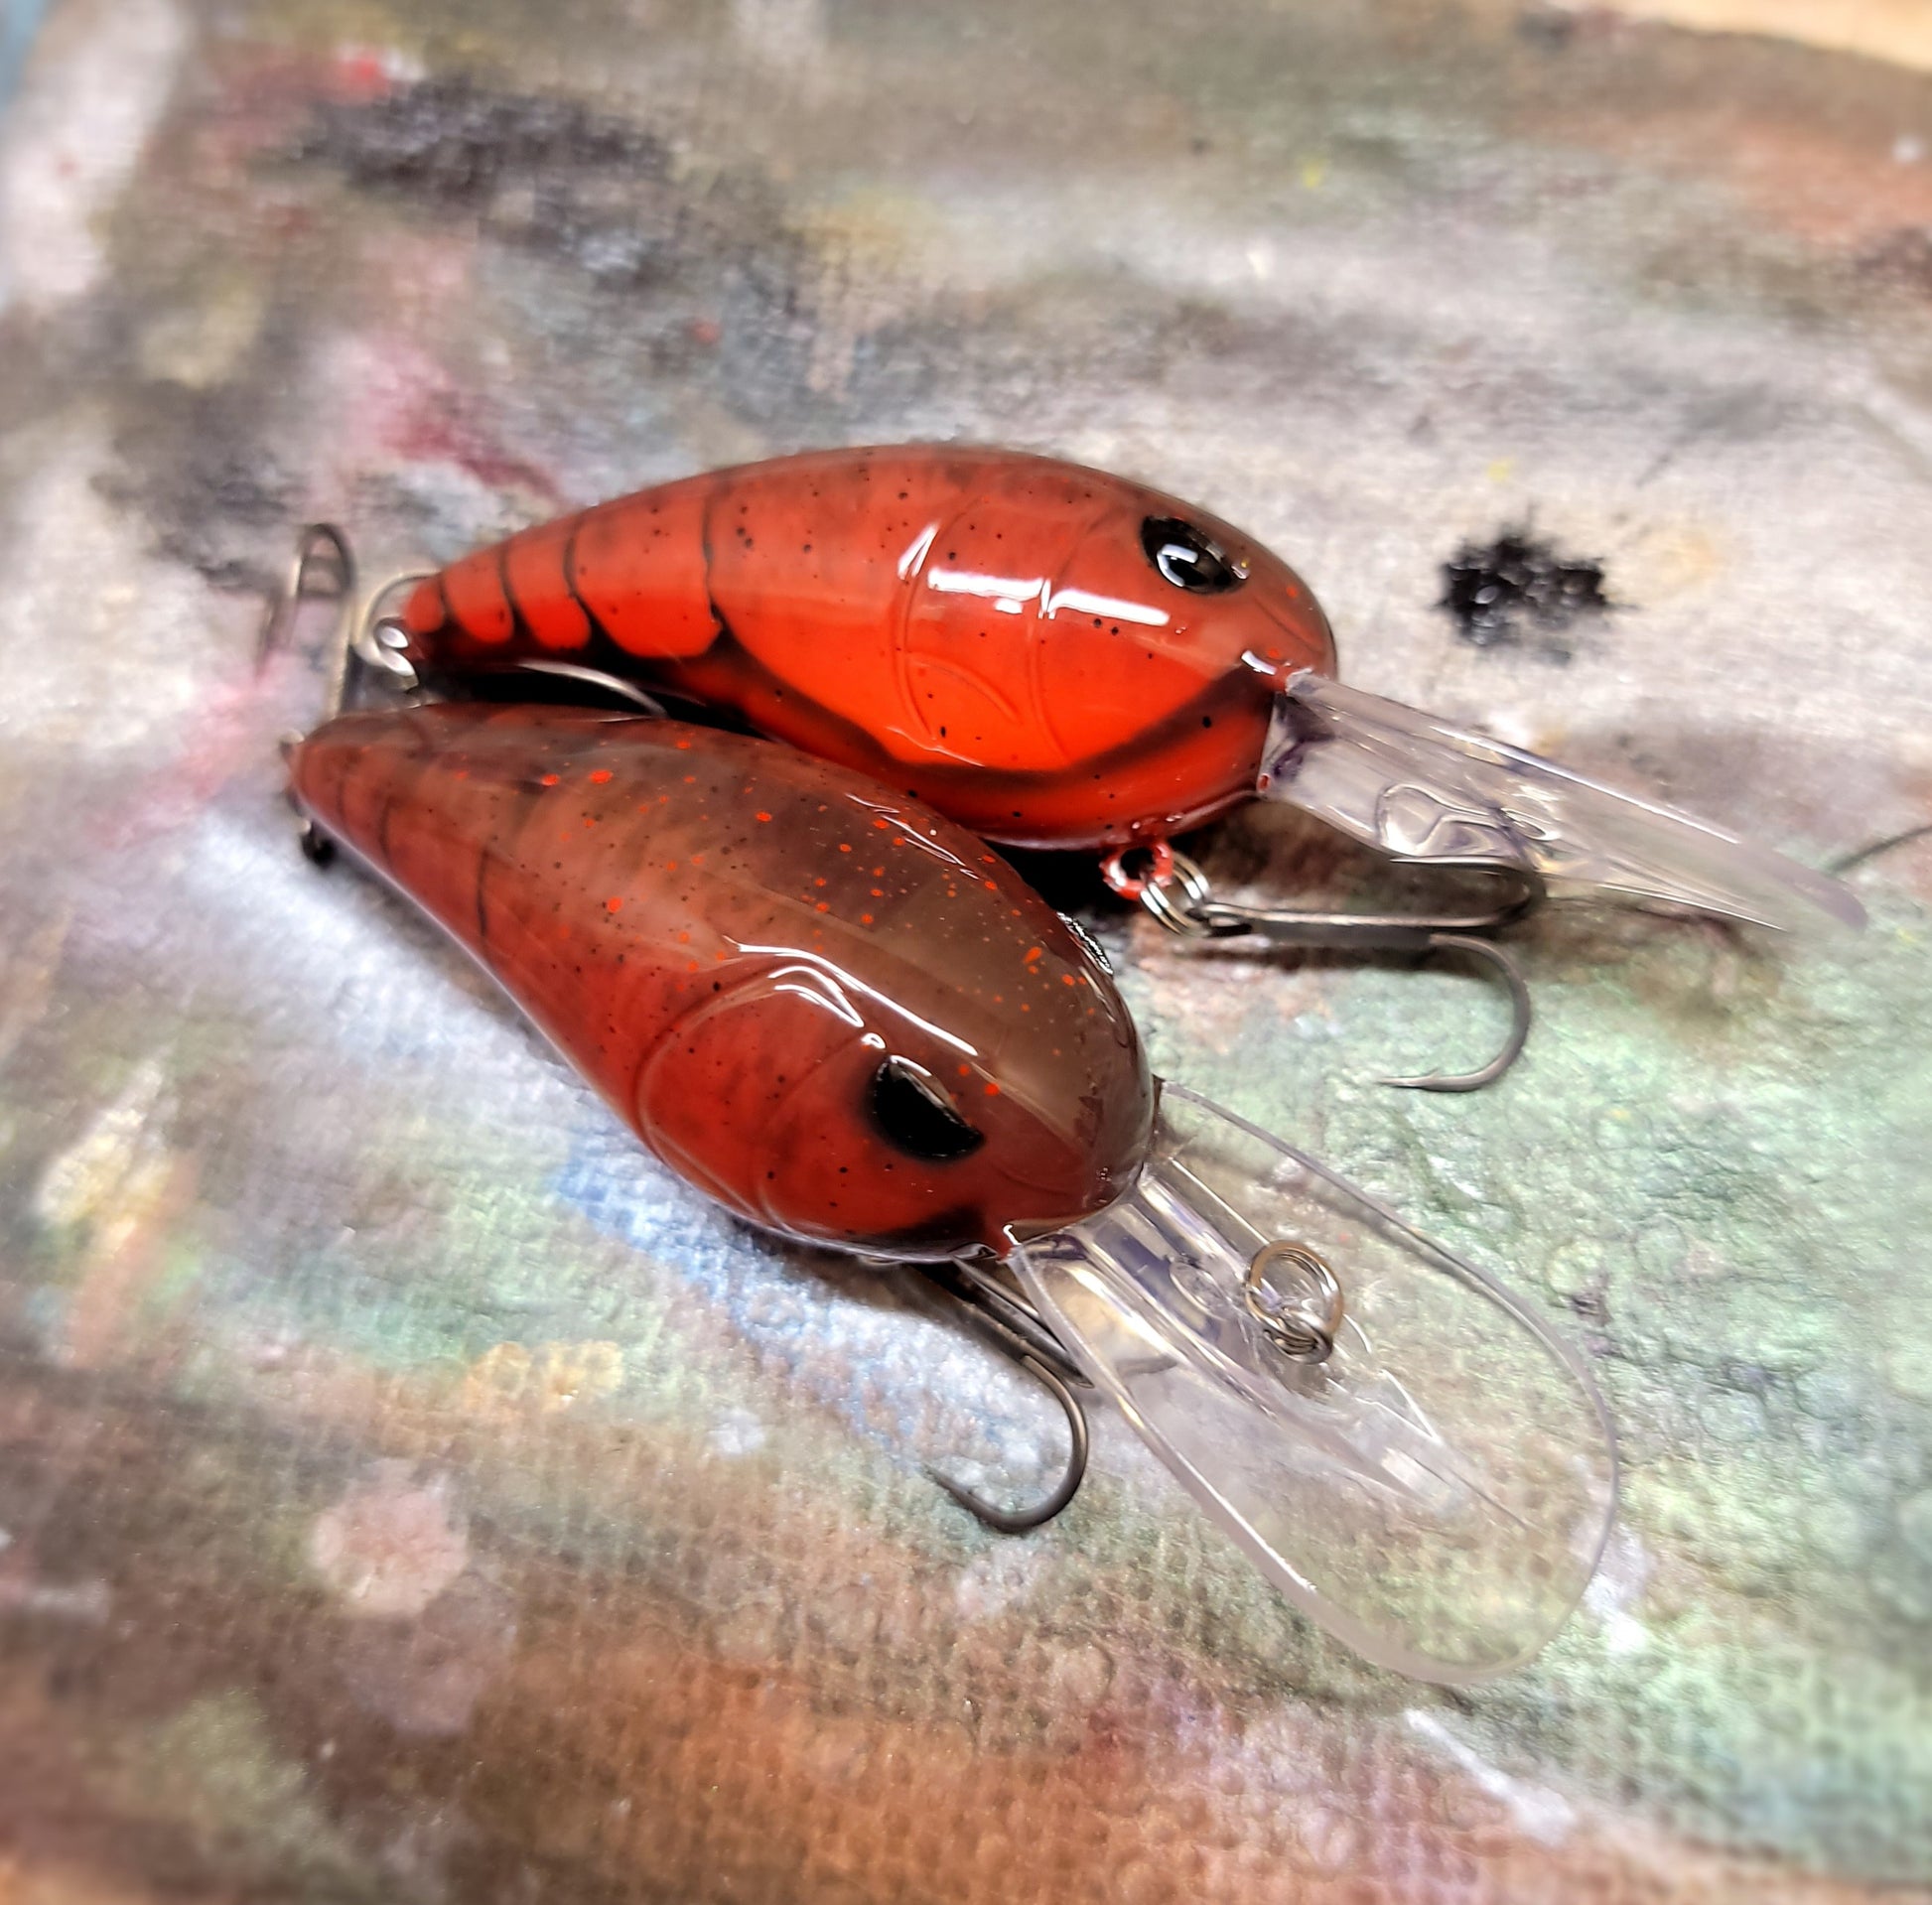 Spro Rk Crawler 55 Red Mater – 129 Fishing